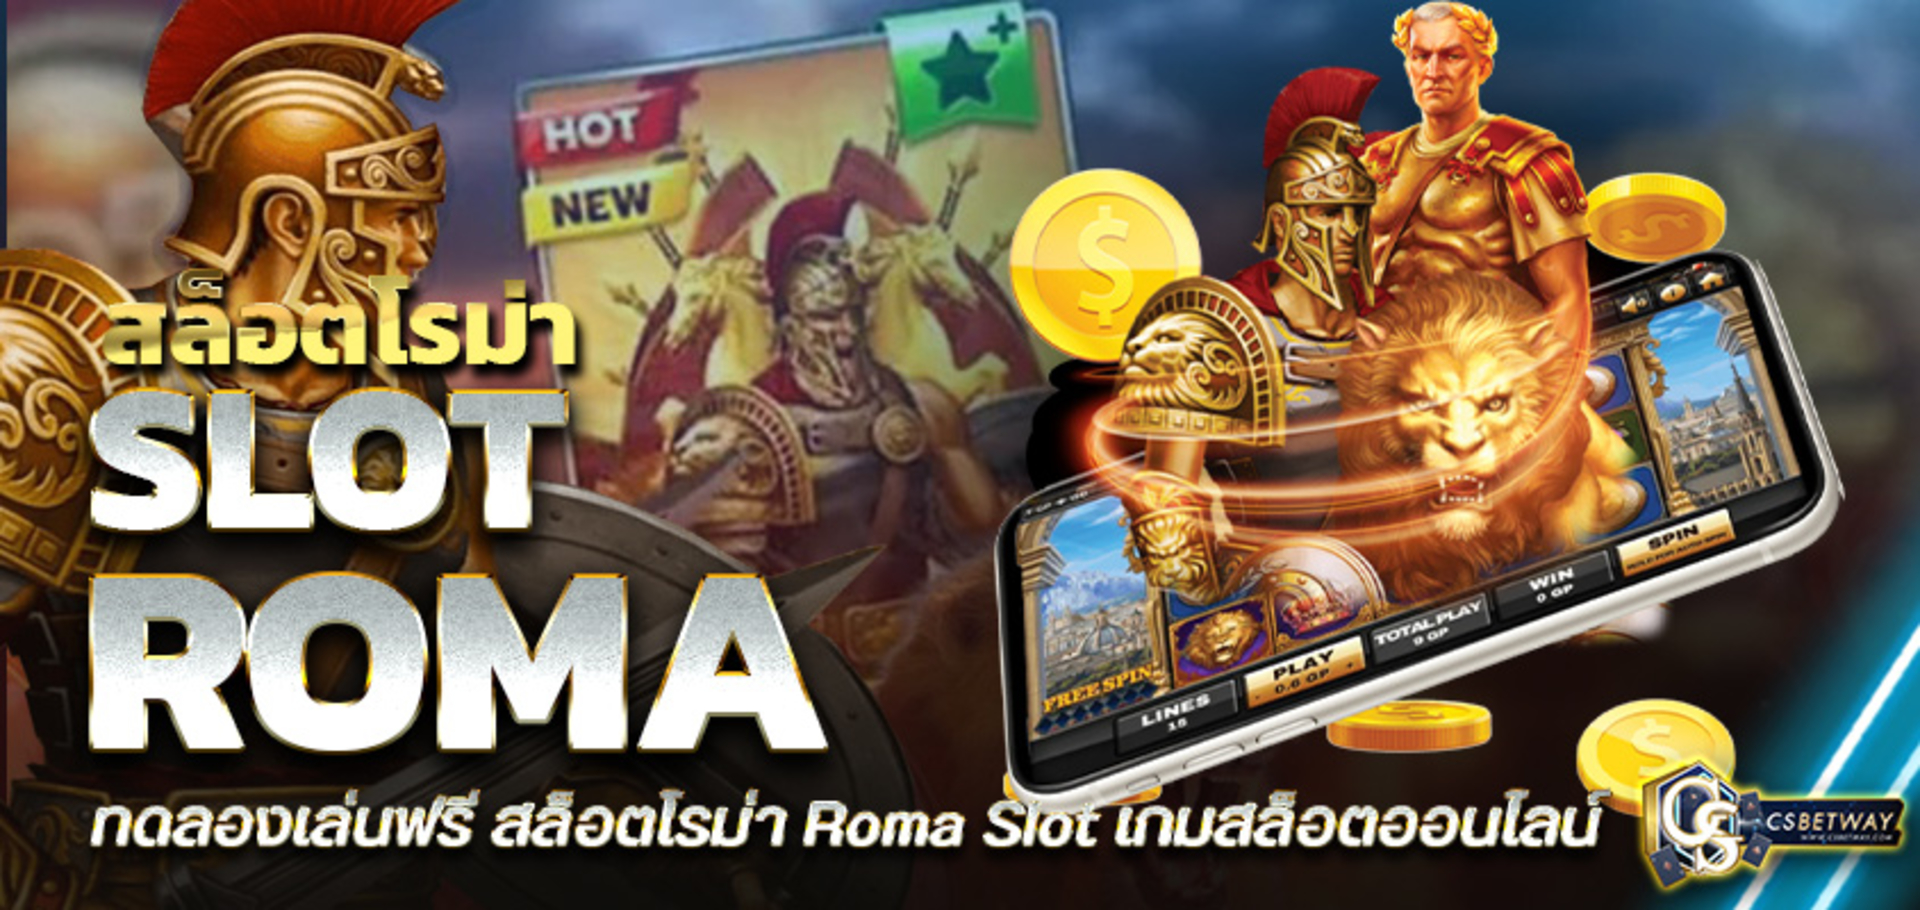 ทดลองเล่นฟรี สล็อตโรม่า Roma Slot เกมสล็อตออนไลน์  เกมสล็อต ยอดฮิต จากค่าย Slotxo เล่นง่าย ได้เงินจริง กับ CSbetway